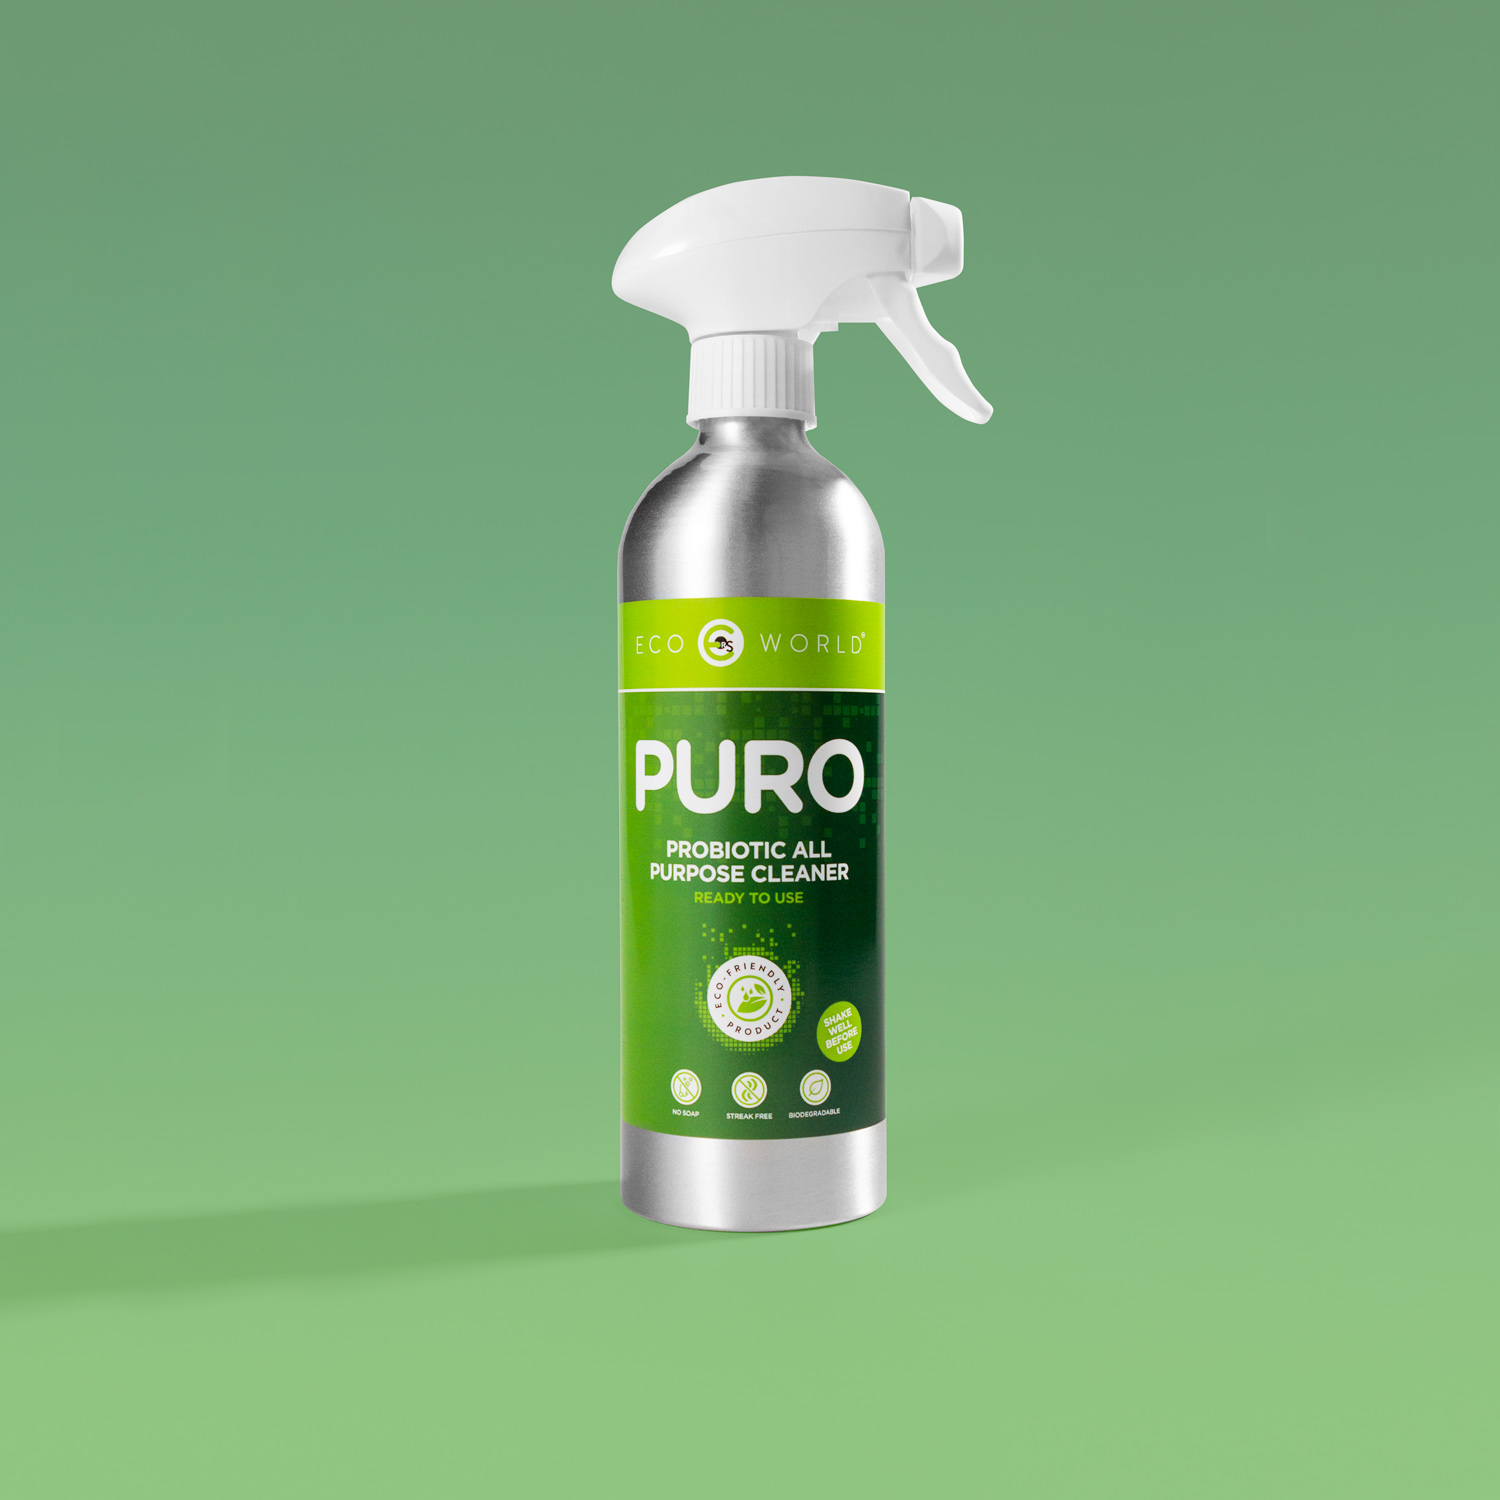 PURO probiotic all purpose cleaner